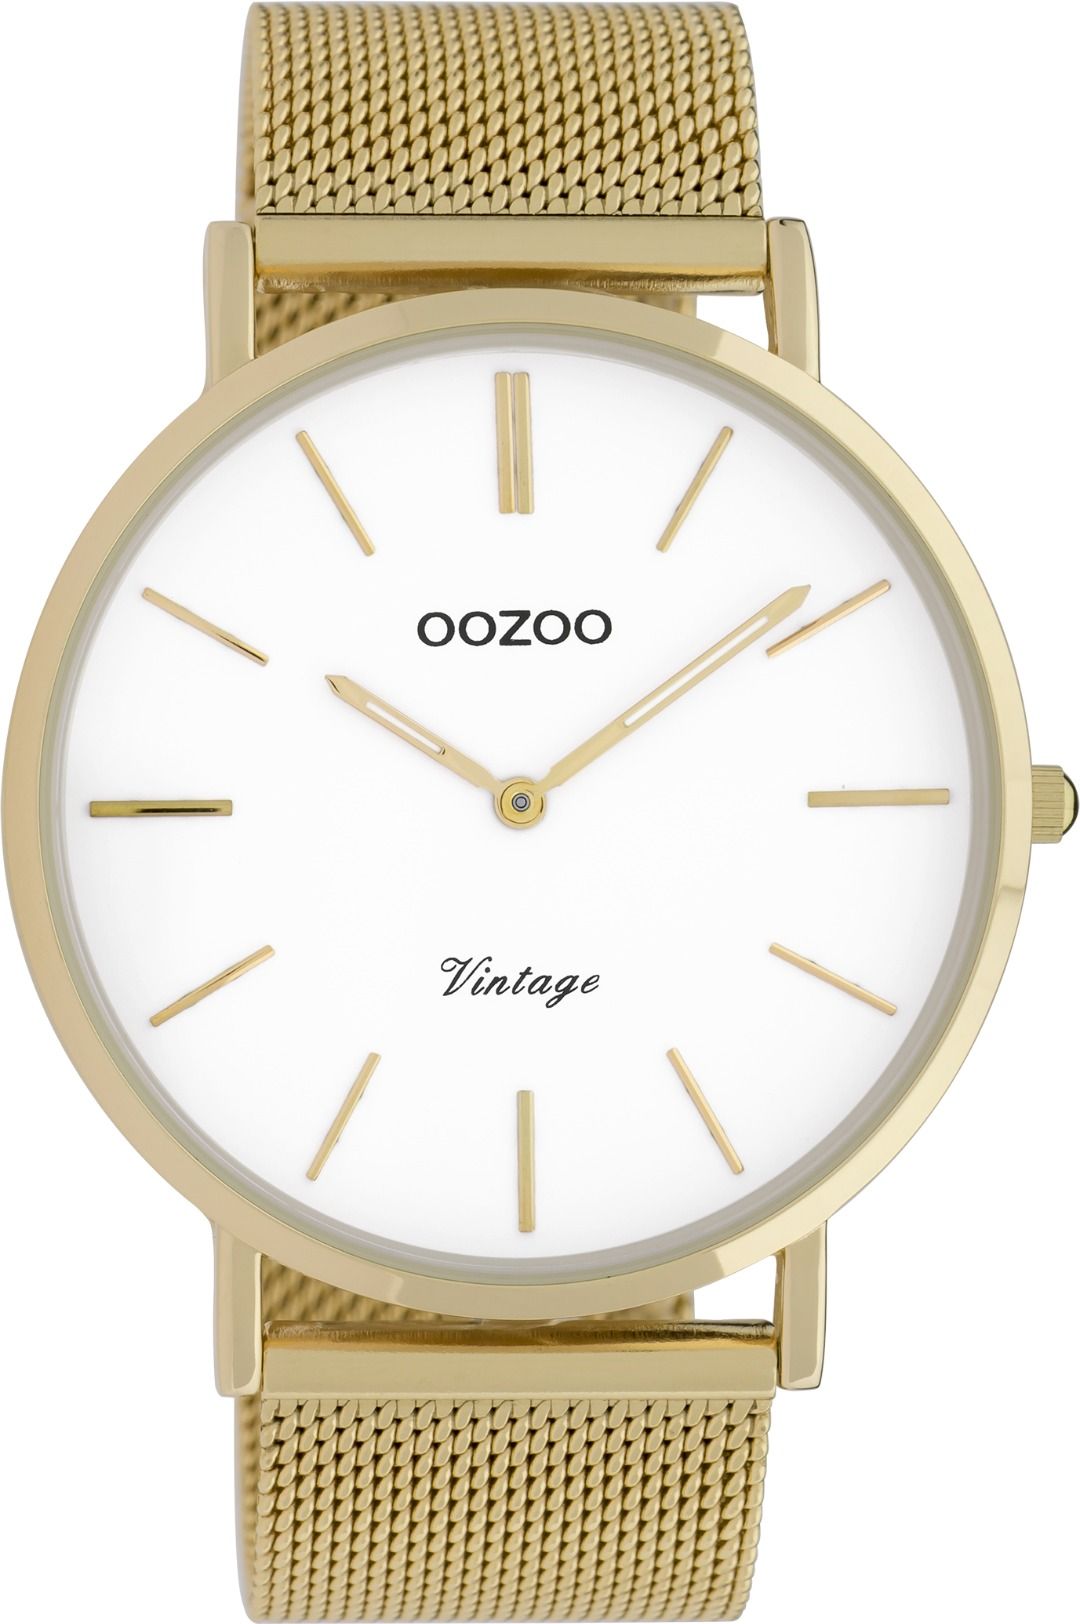 OOZOO Vintage 9908 - 44 mm